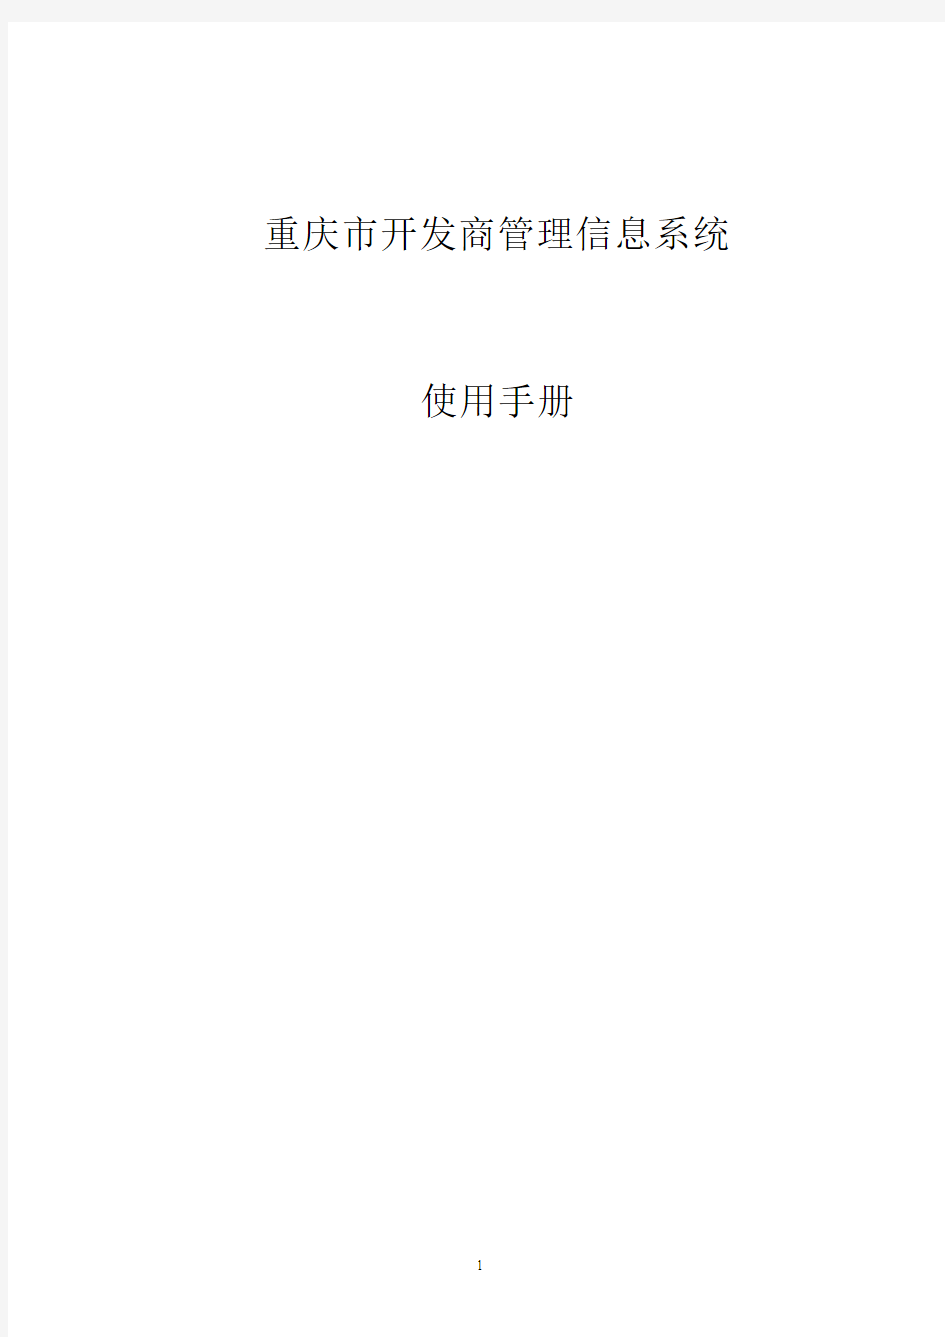 重庆市房地产市场信息系统(不动产版)操作指南